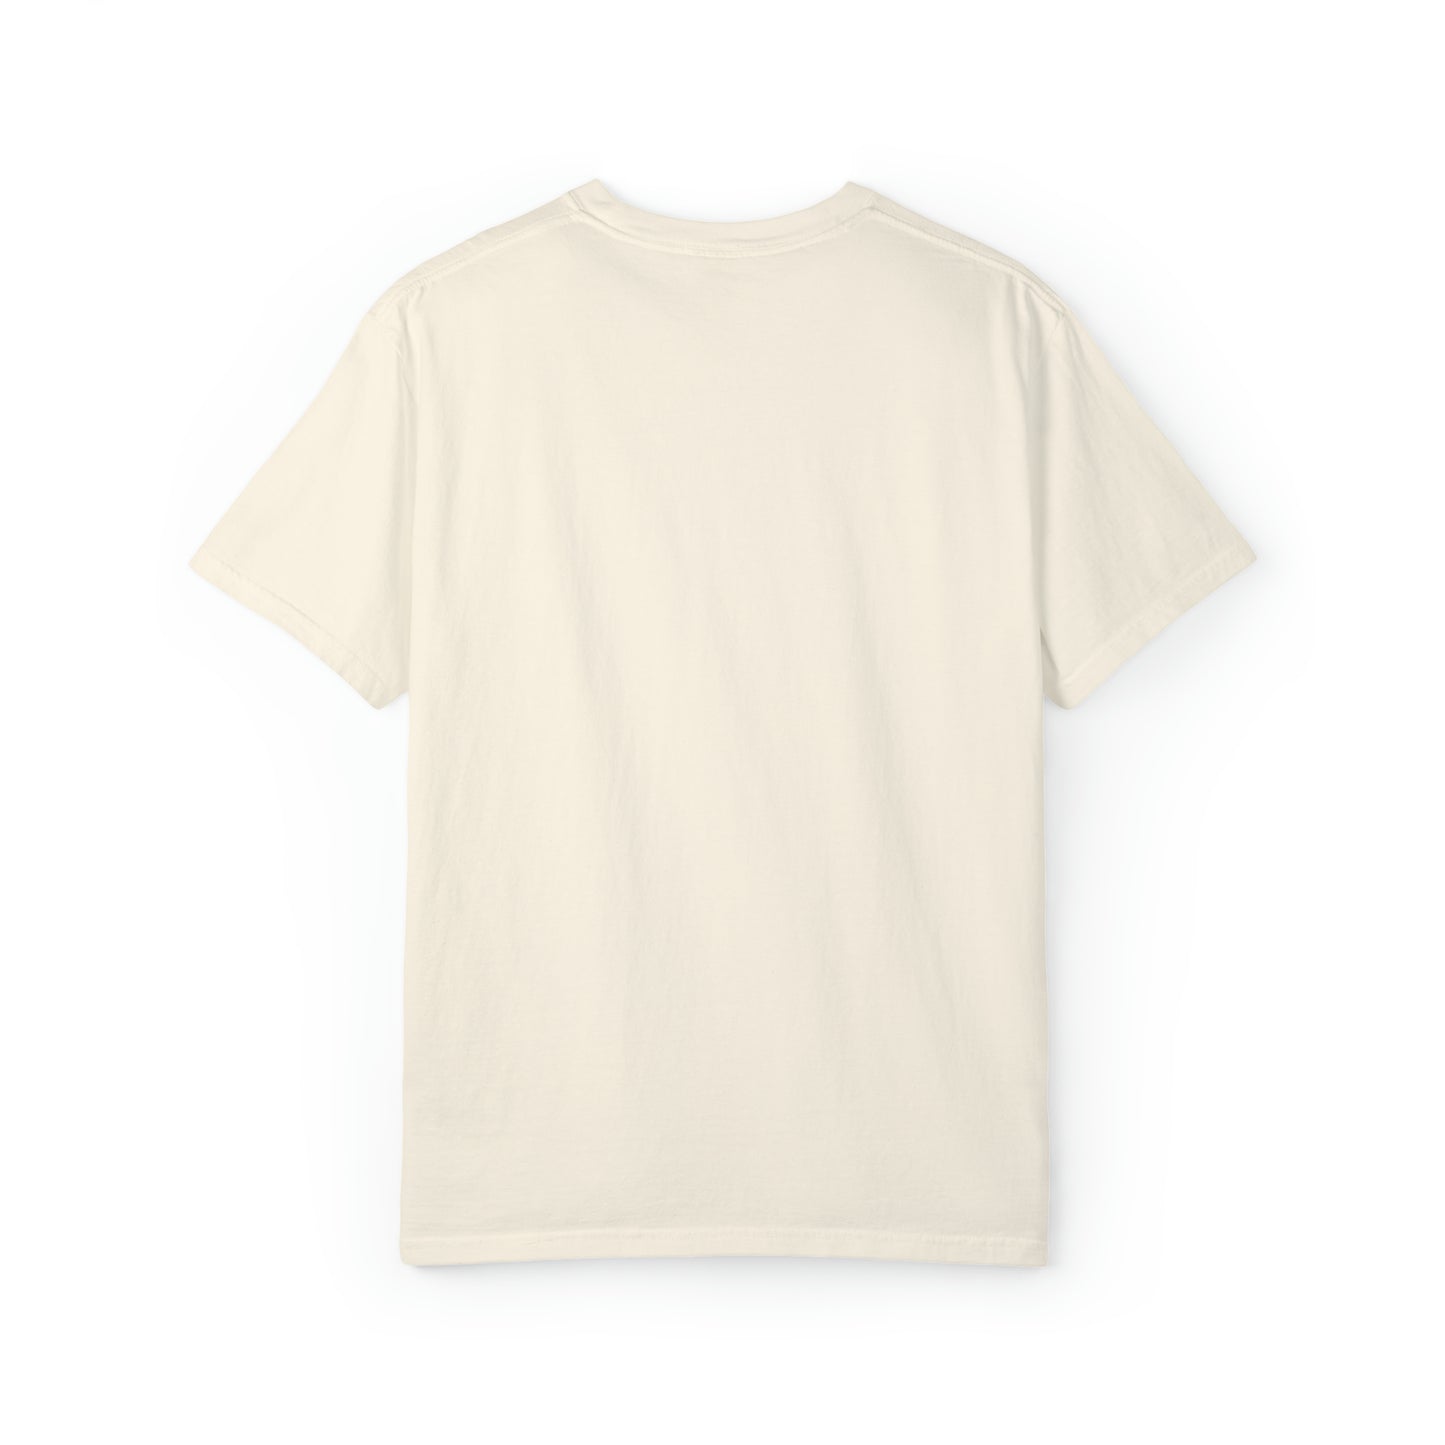 Baker T shirt, Unisex Garment-Dyed T-shirt